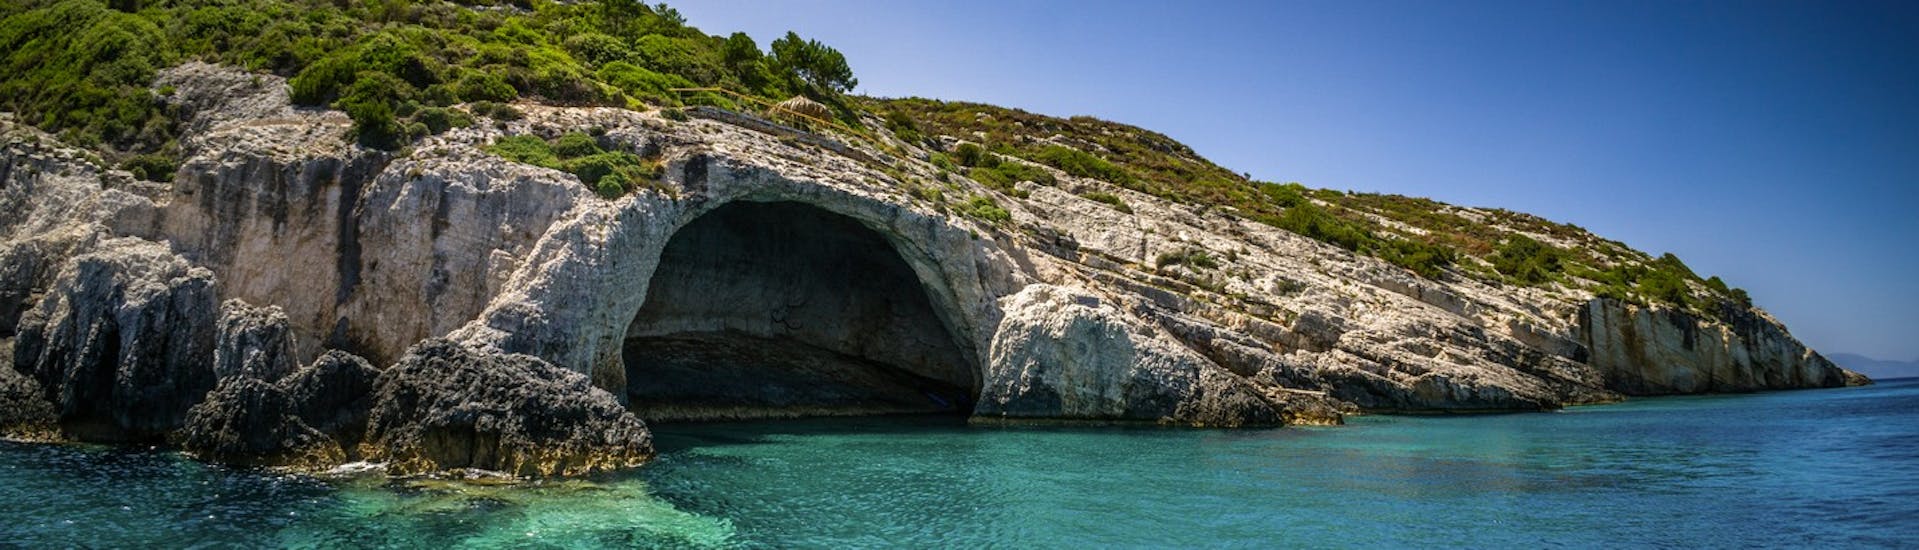 Les grottes bleues que My Tours visite lors de son excursion en bateau autour de Zakynthos.